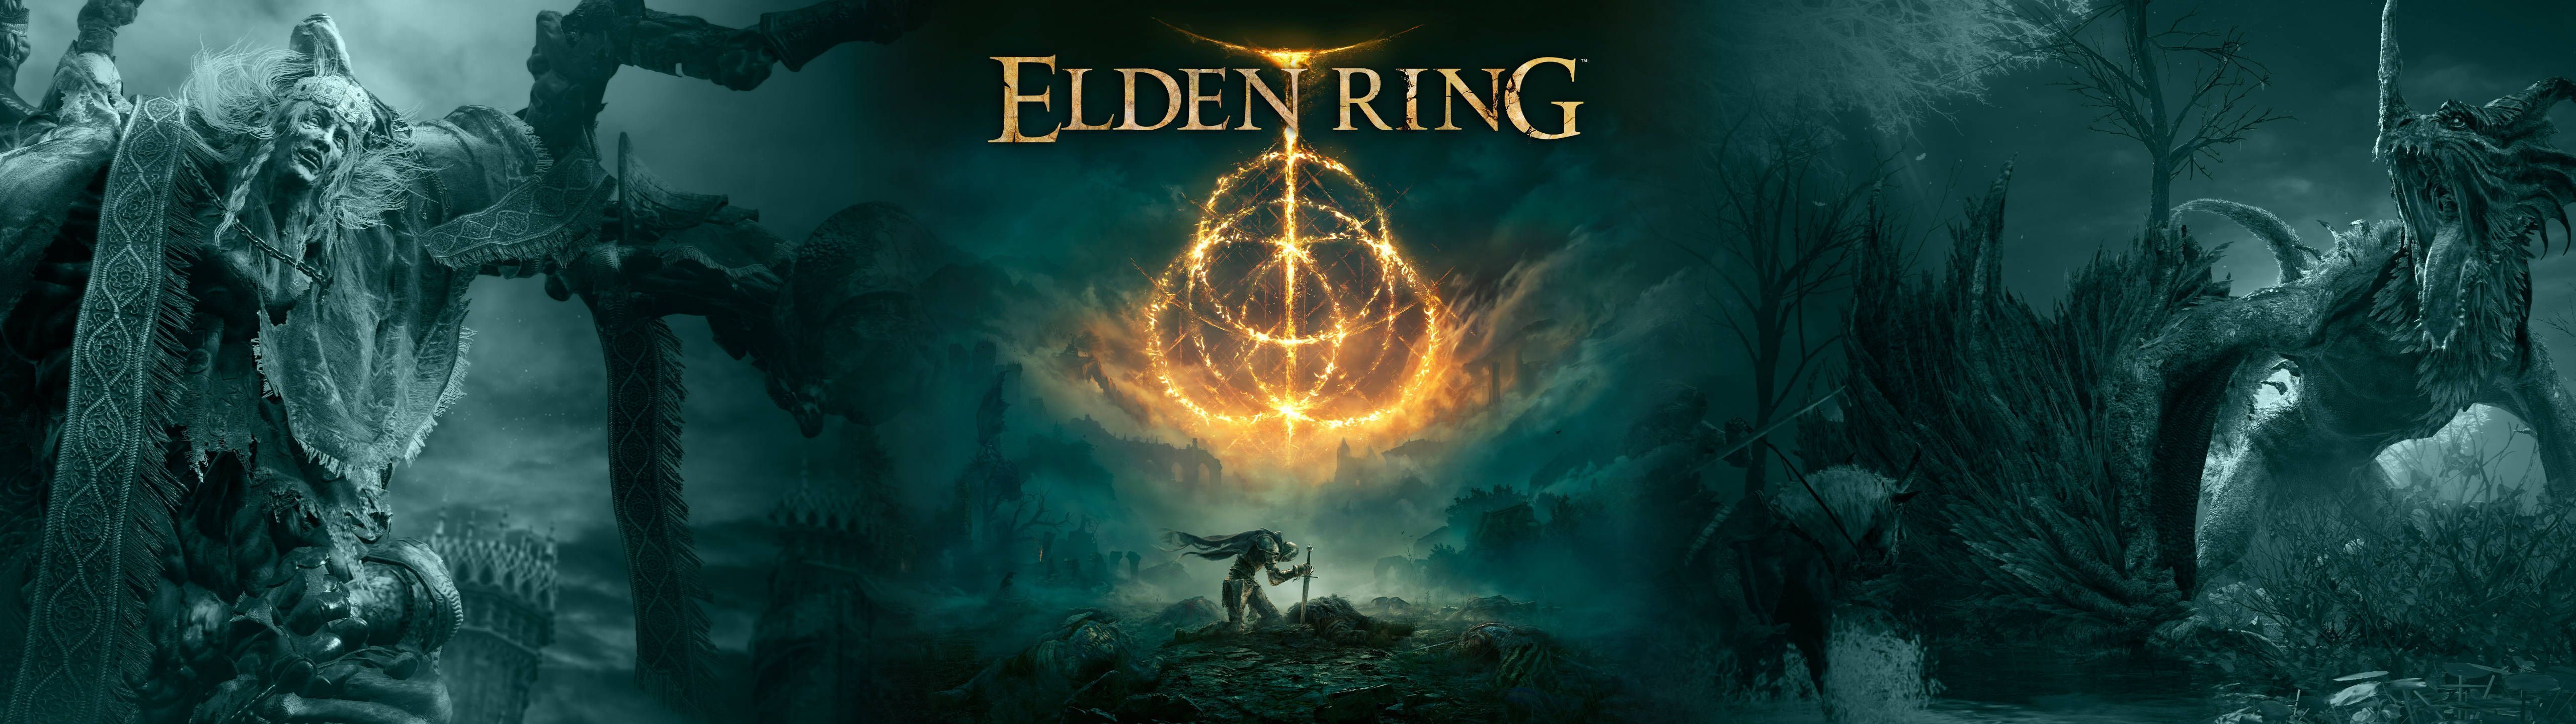 The cover art for eldering - 5120x1440